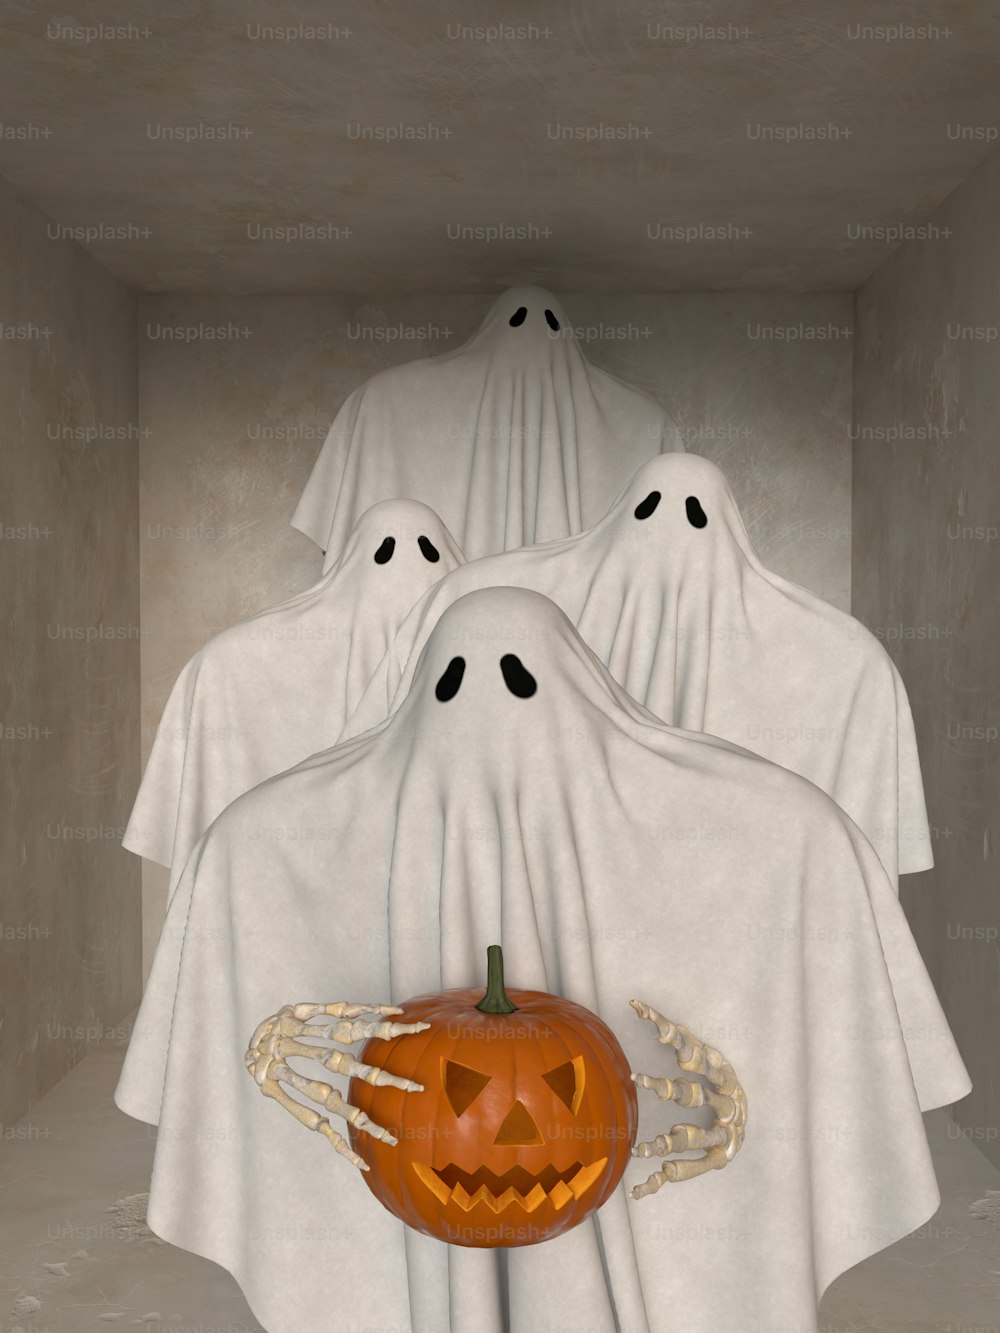 Un grupo de cabezas fantasmas en una habitación con una calabaza